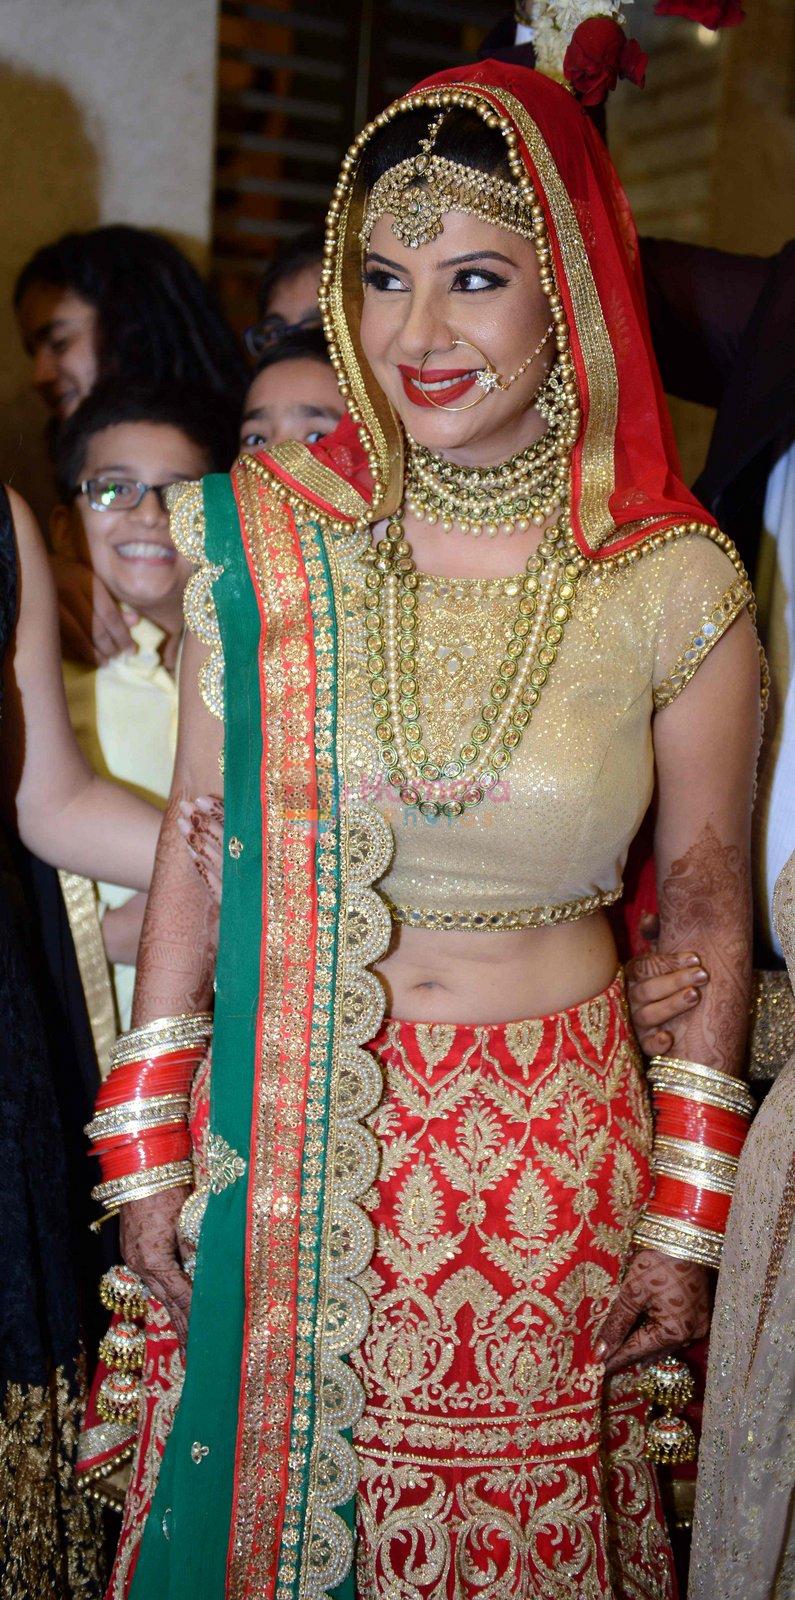 Sambhavna seth and Avinash Dwivedi's Wedding on 14th July 2016